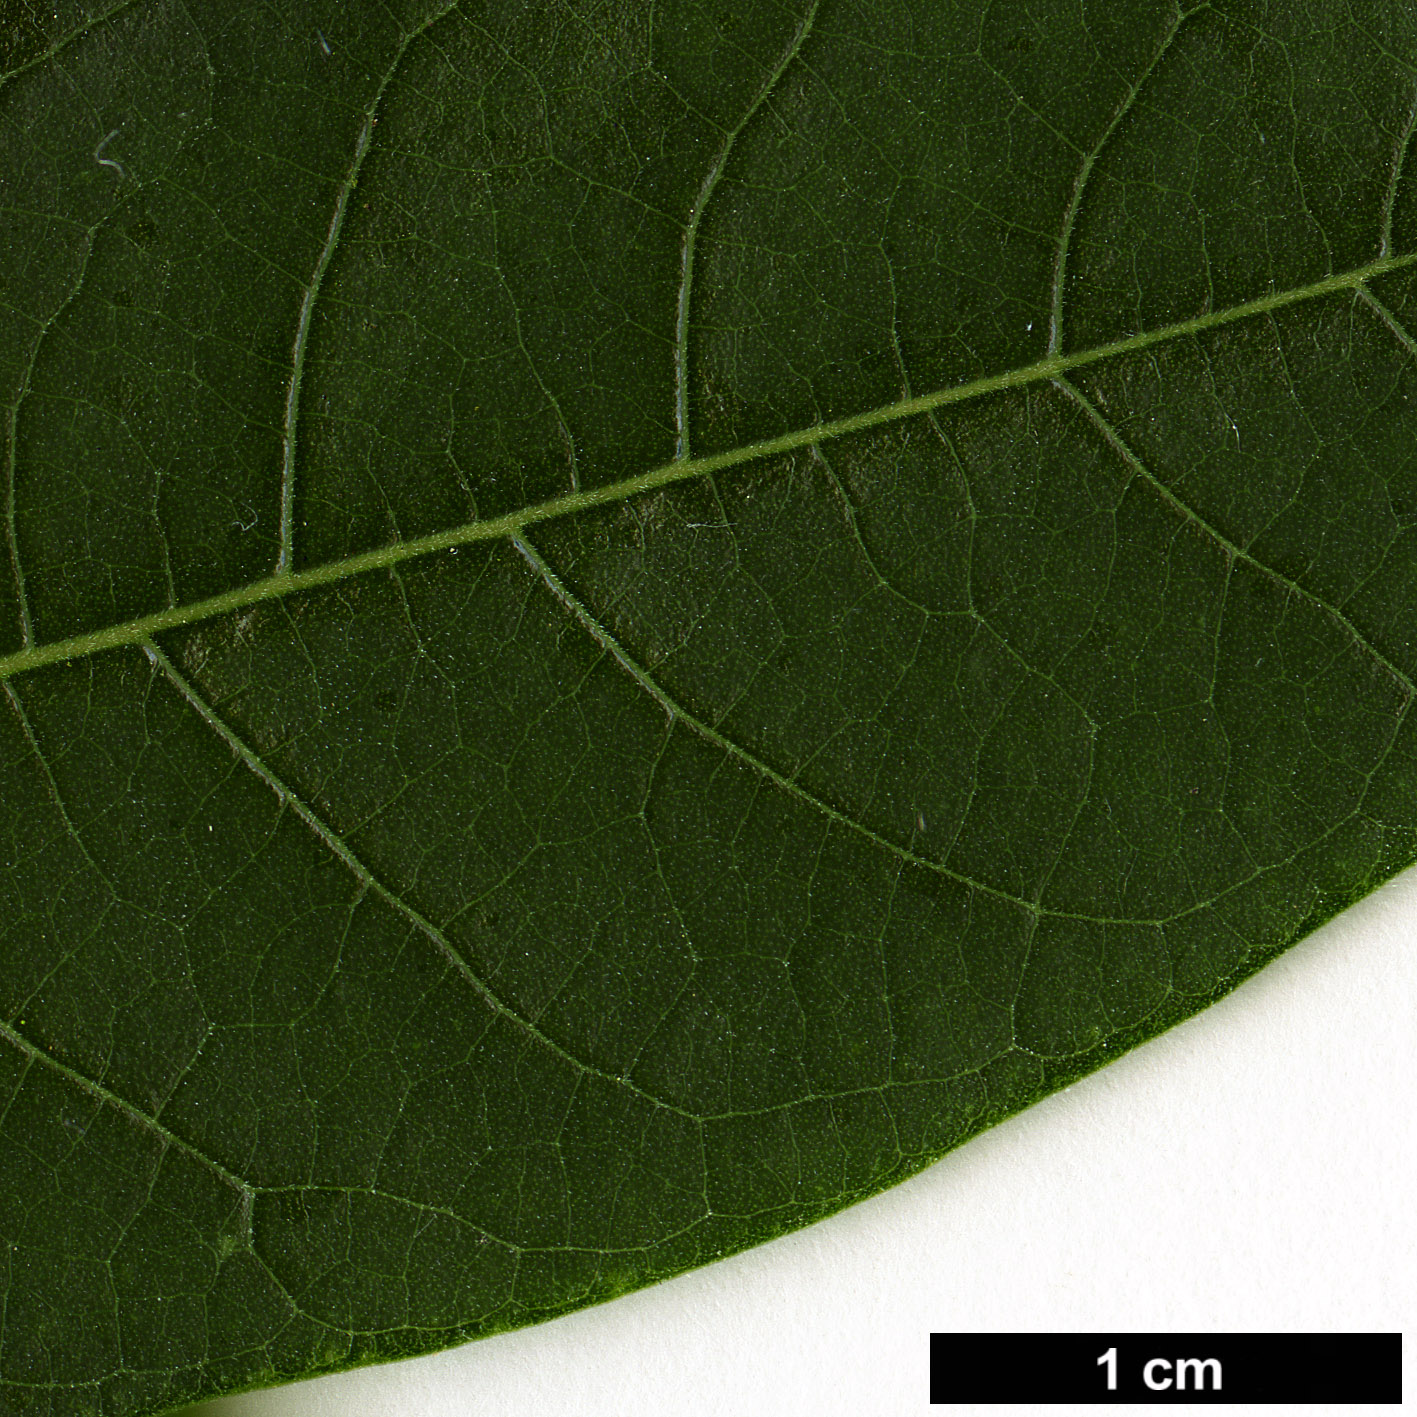 High resolution image: Family: Lauraceae - Genus: Litsea - Taxon: kingii